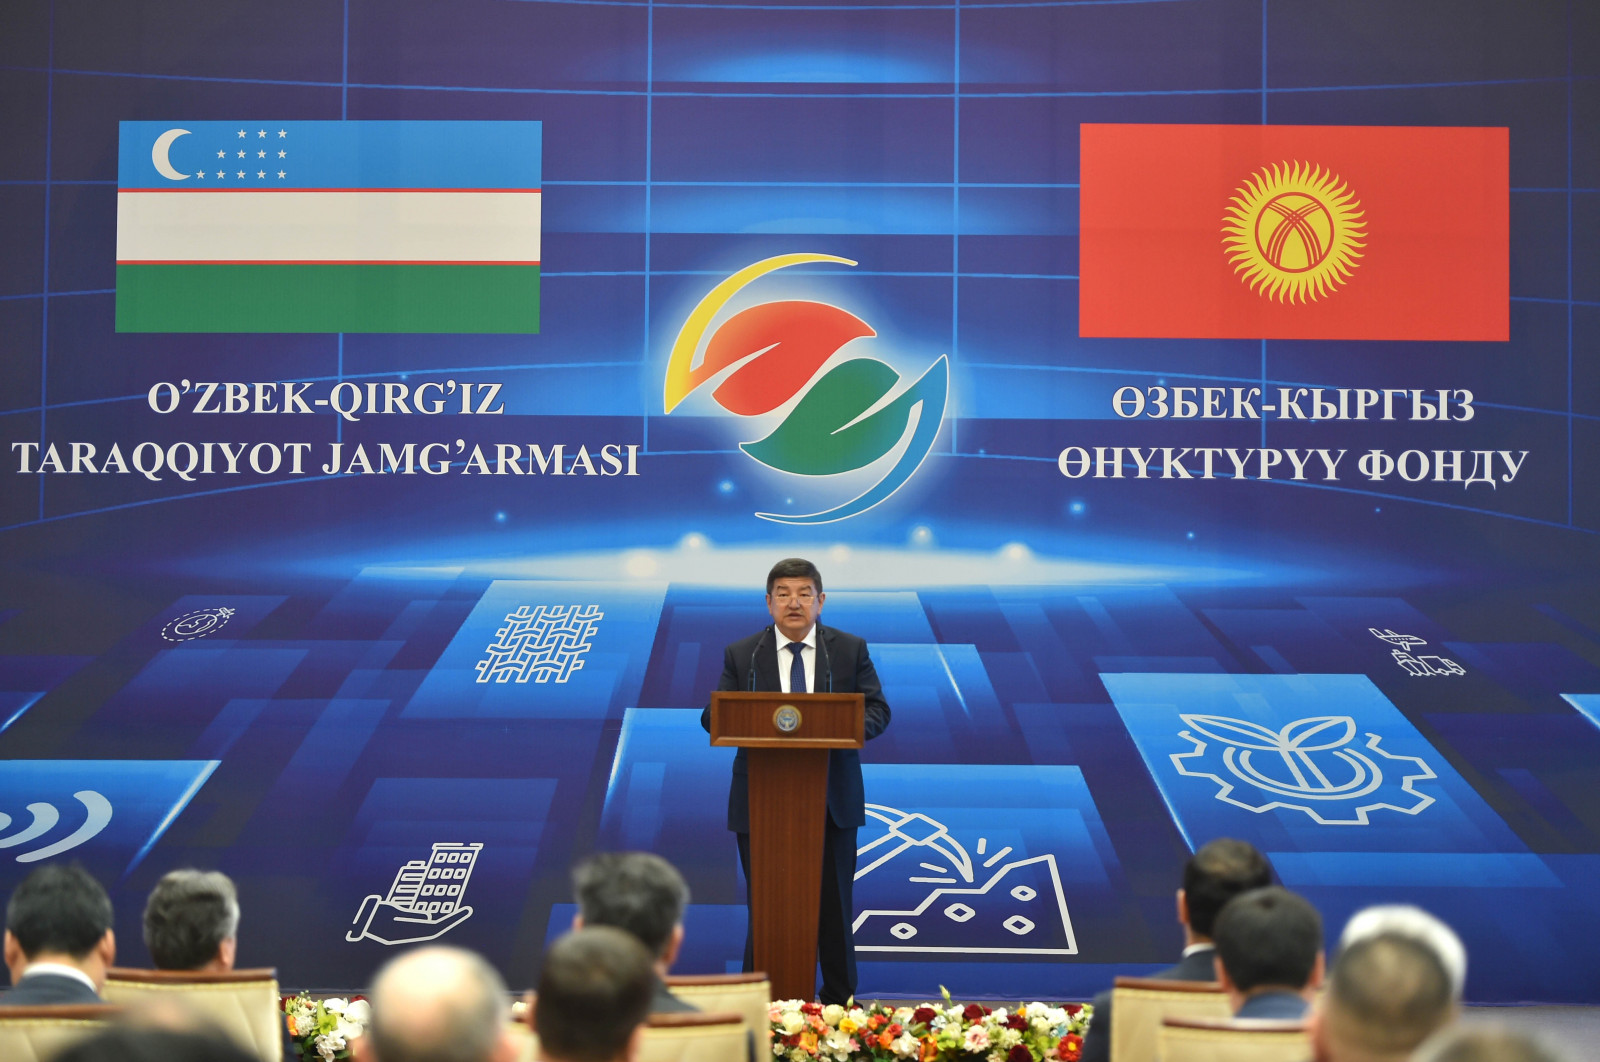 Открытие узбекско-киргизского фонда развития